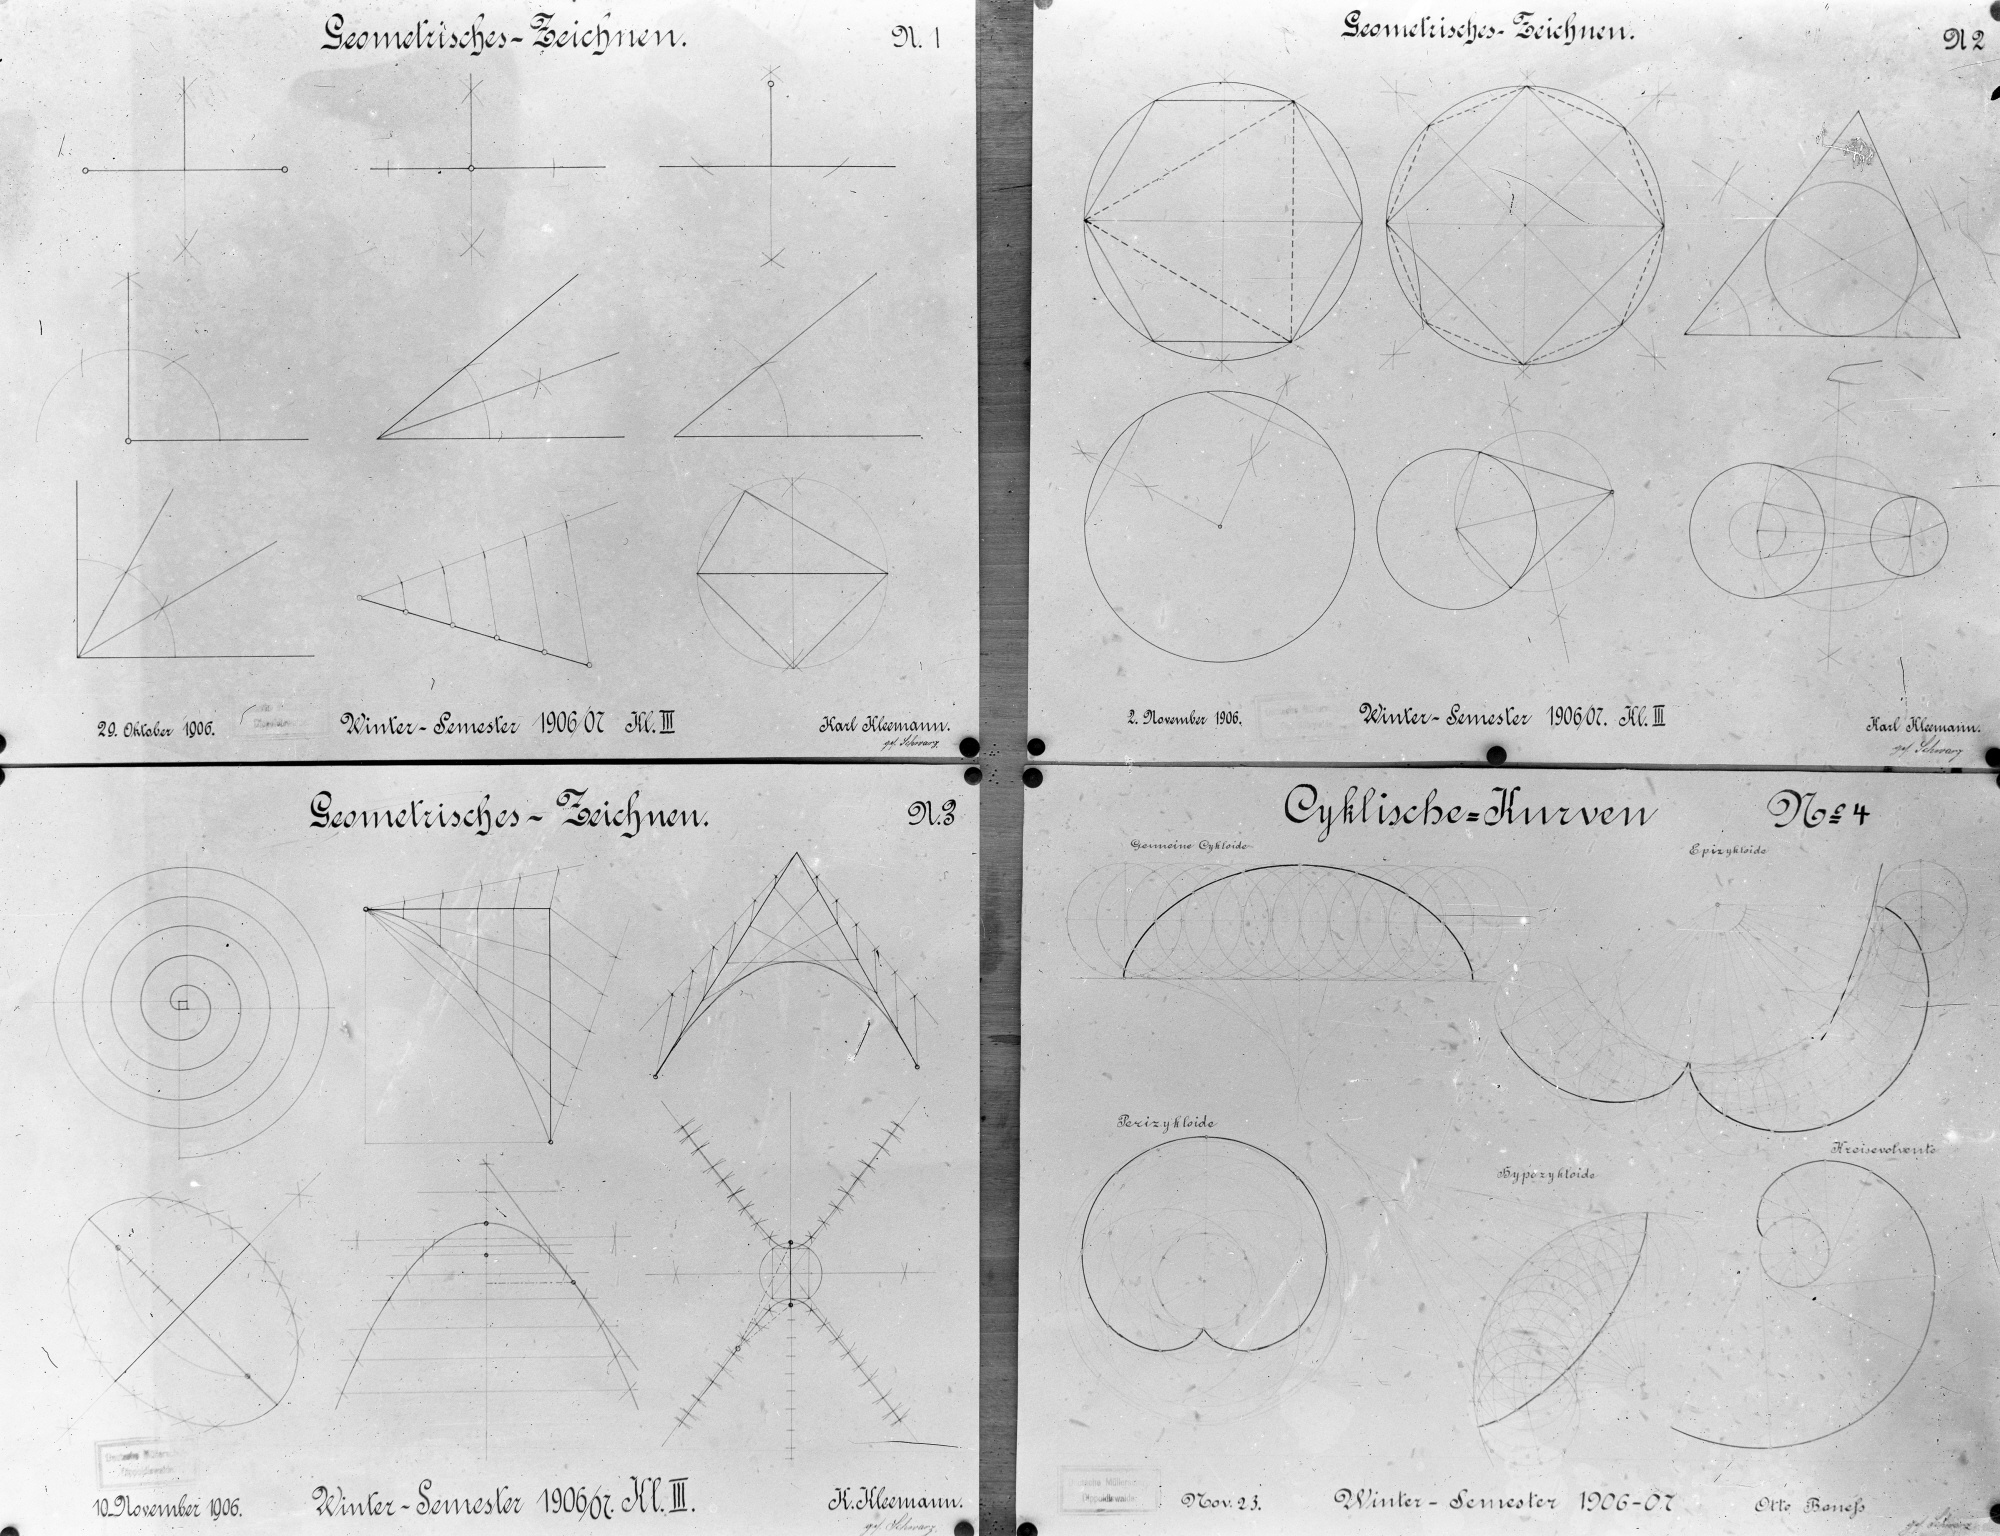 Geometrisches Zeichnen; Cyklische (zyklisch) Kurven (Historische Mühle von Sanssouci CC BY-NC-SA)